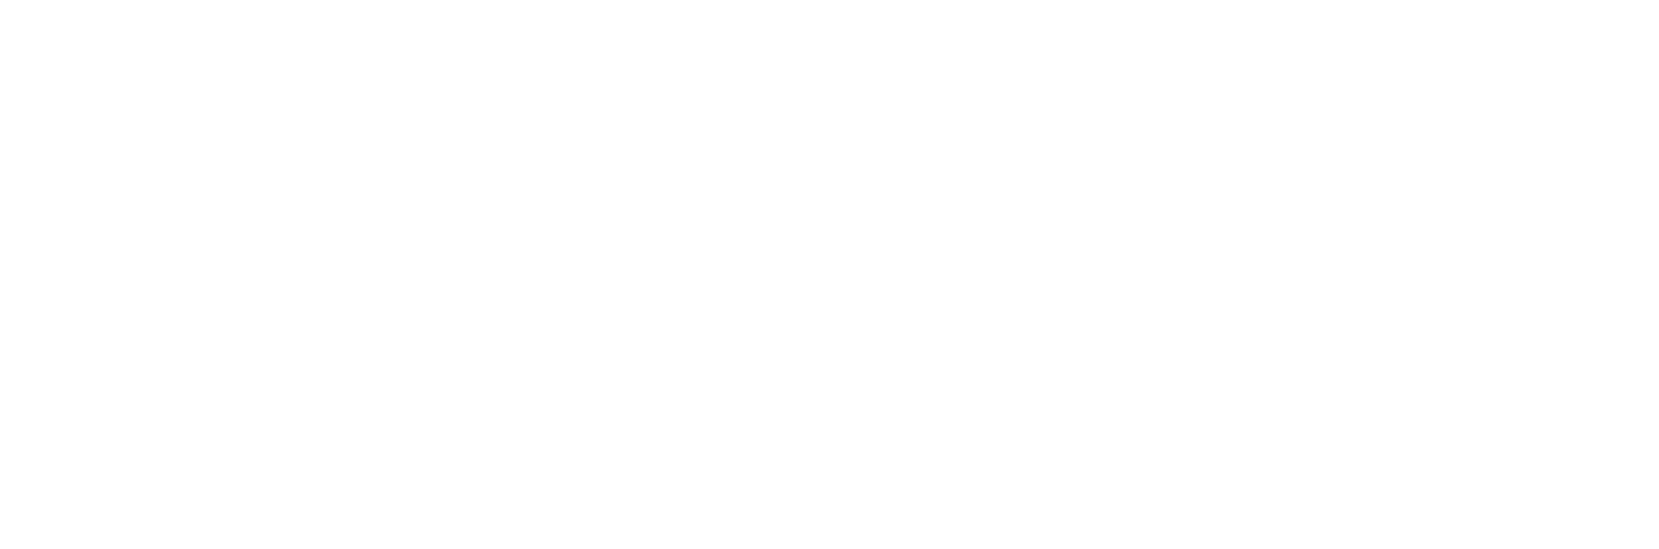 Congresswoman Elaine Luria logo